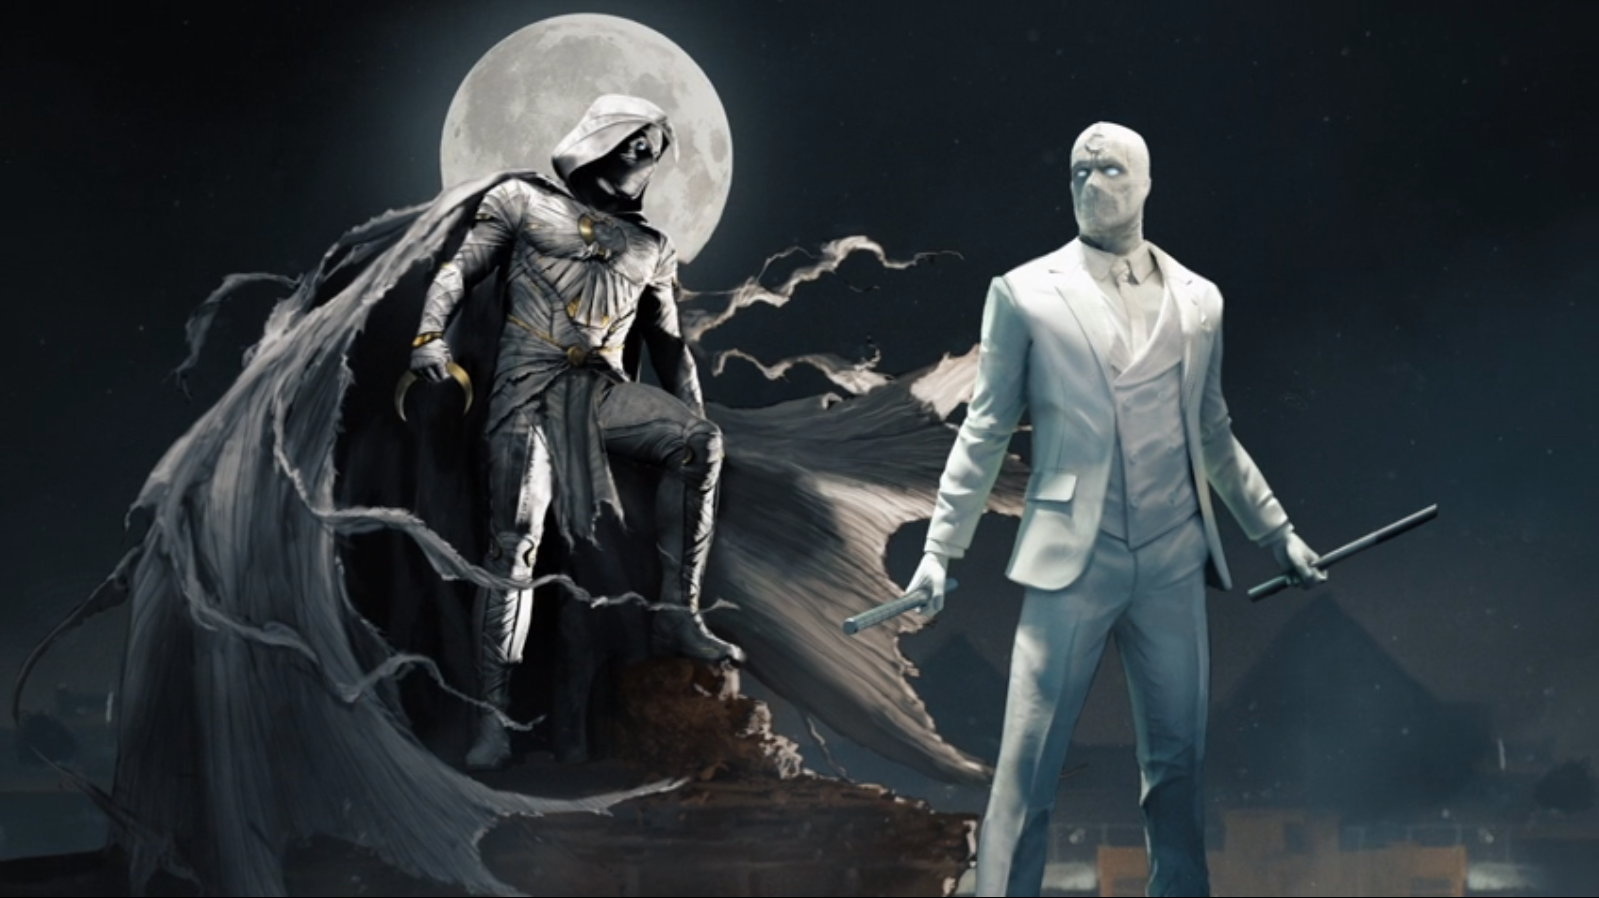 Moon Knight Concept  Marvel moon knight, Moon knight, Marvel knights